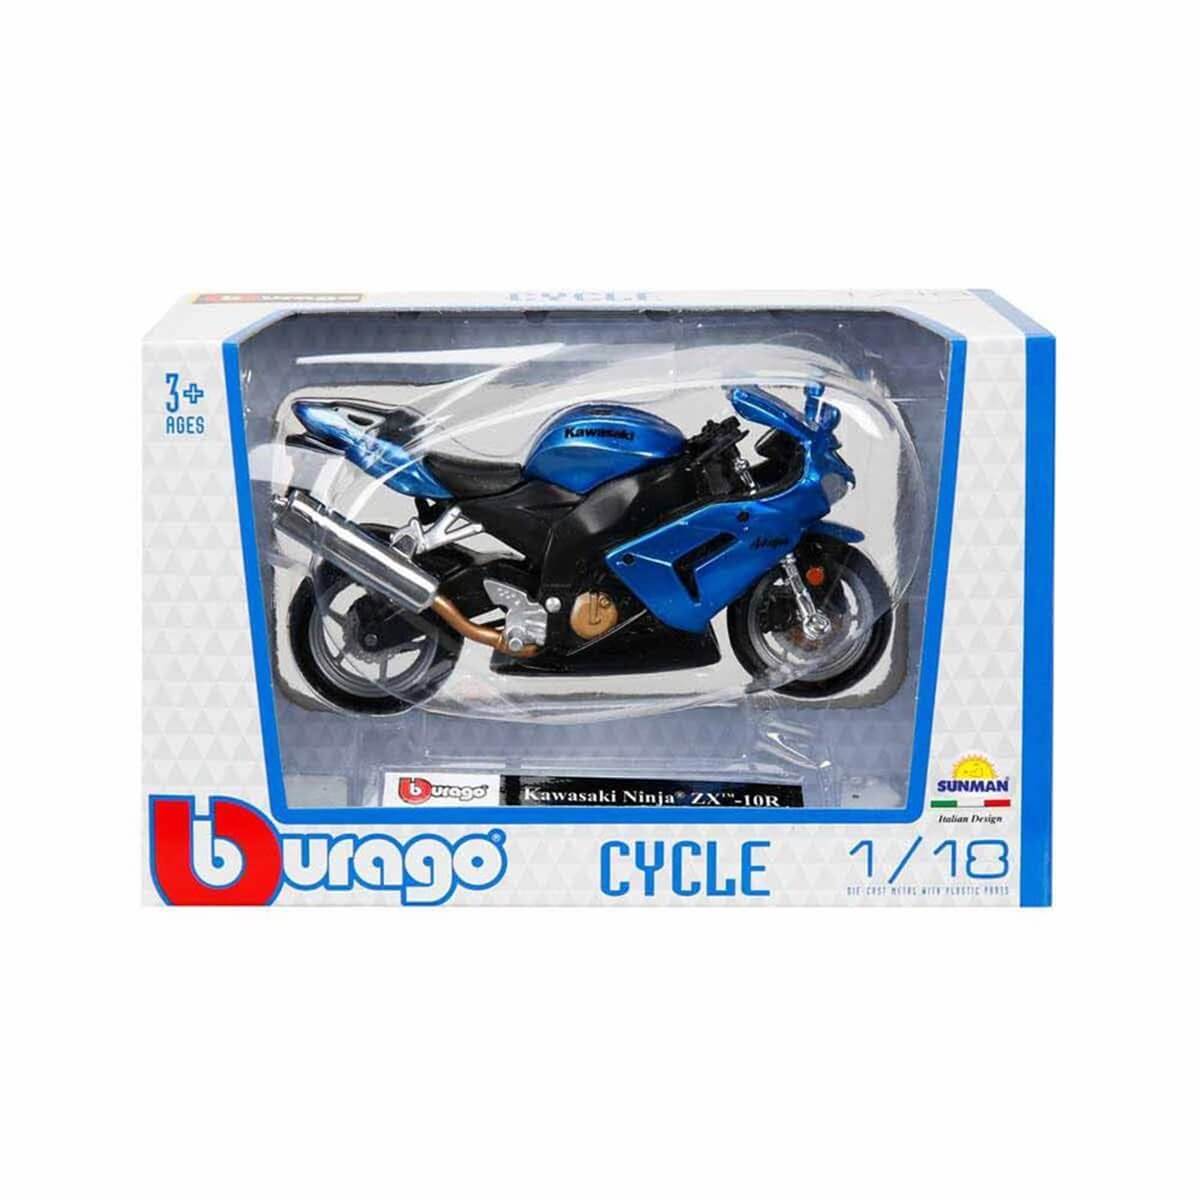 Burago 1:18 Model Motosiklet, Alışverişin Adresi'nde | Shopiglo